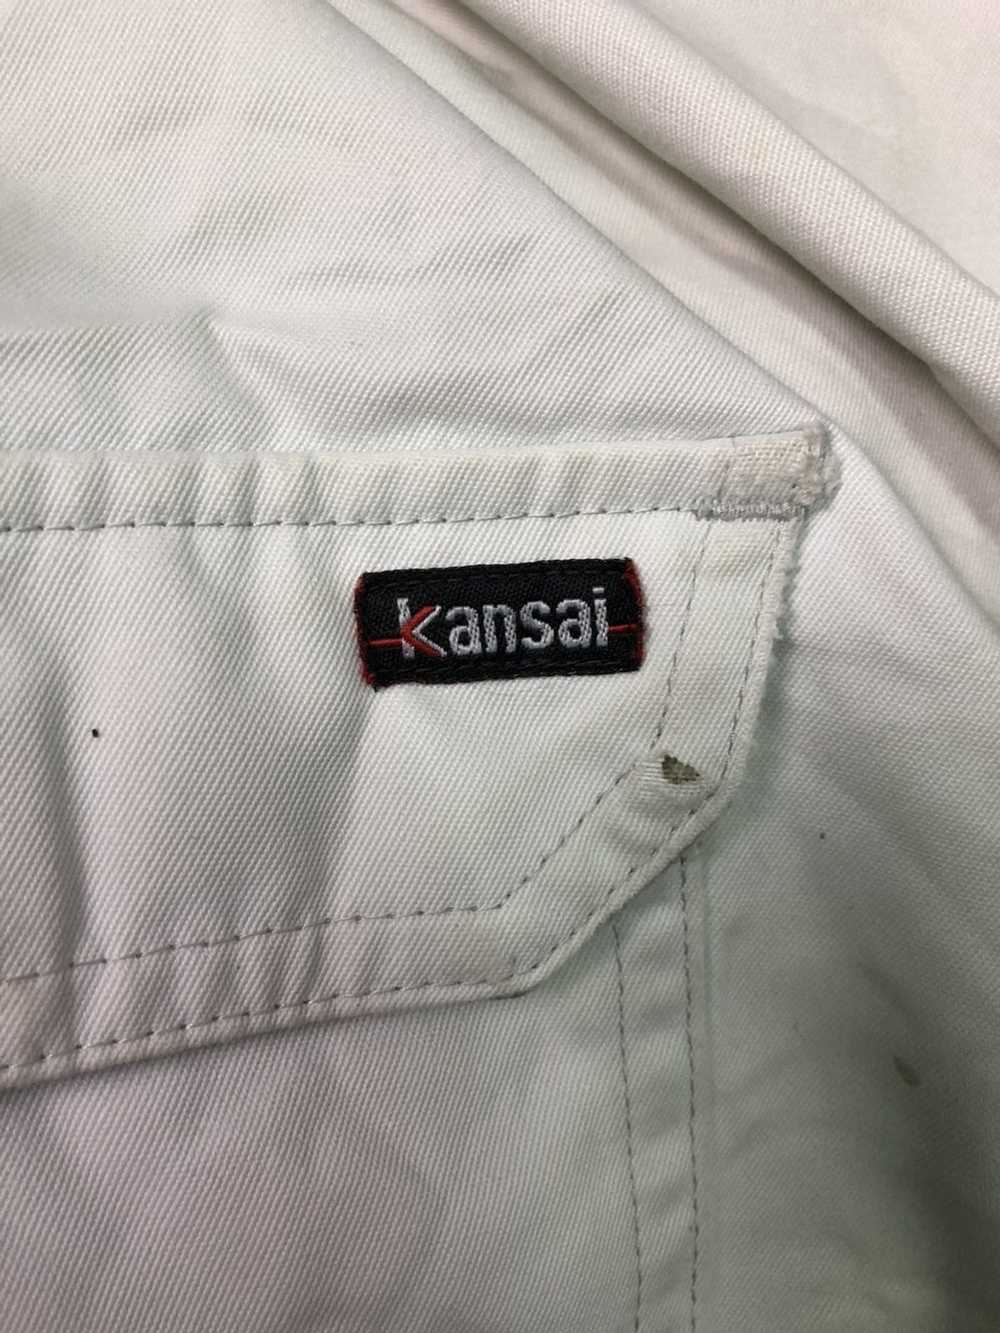 Kansai Yamamoto × Kansai Yamamoto Kbs Kansai Unif… - image 4